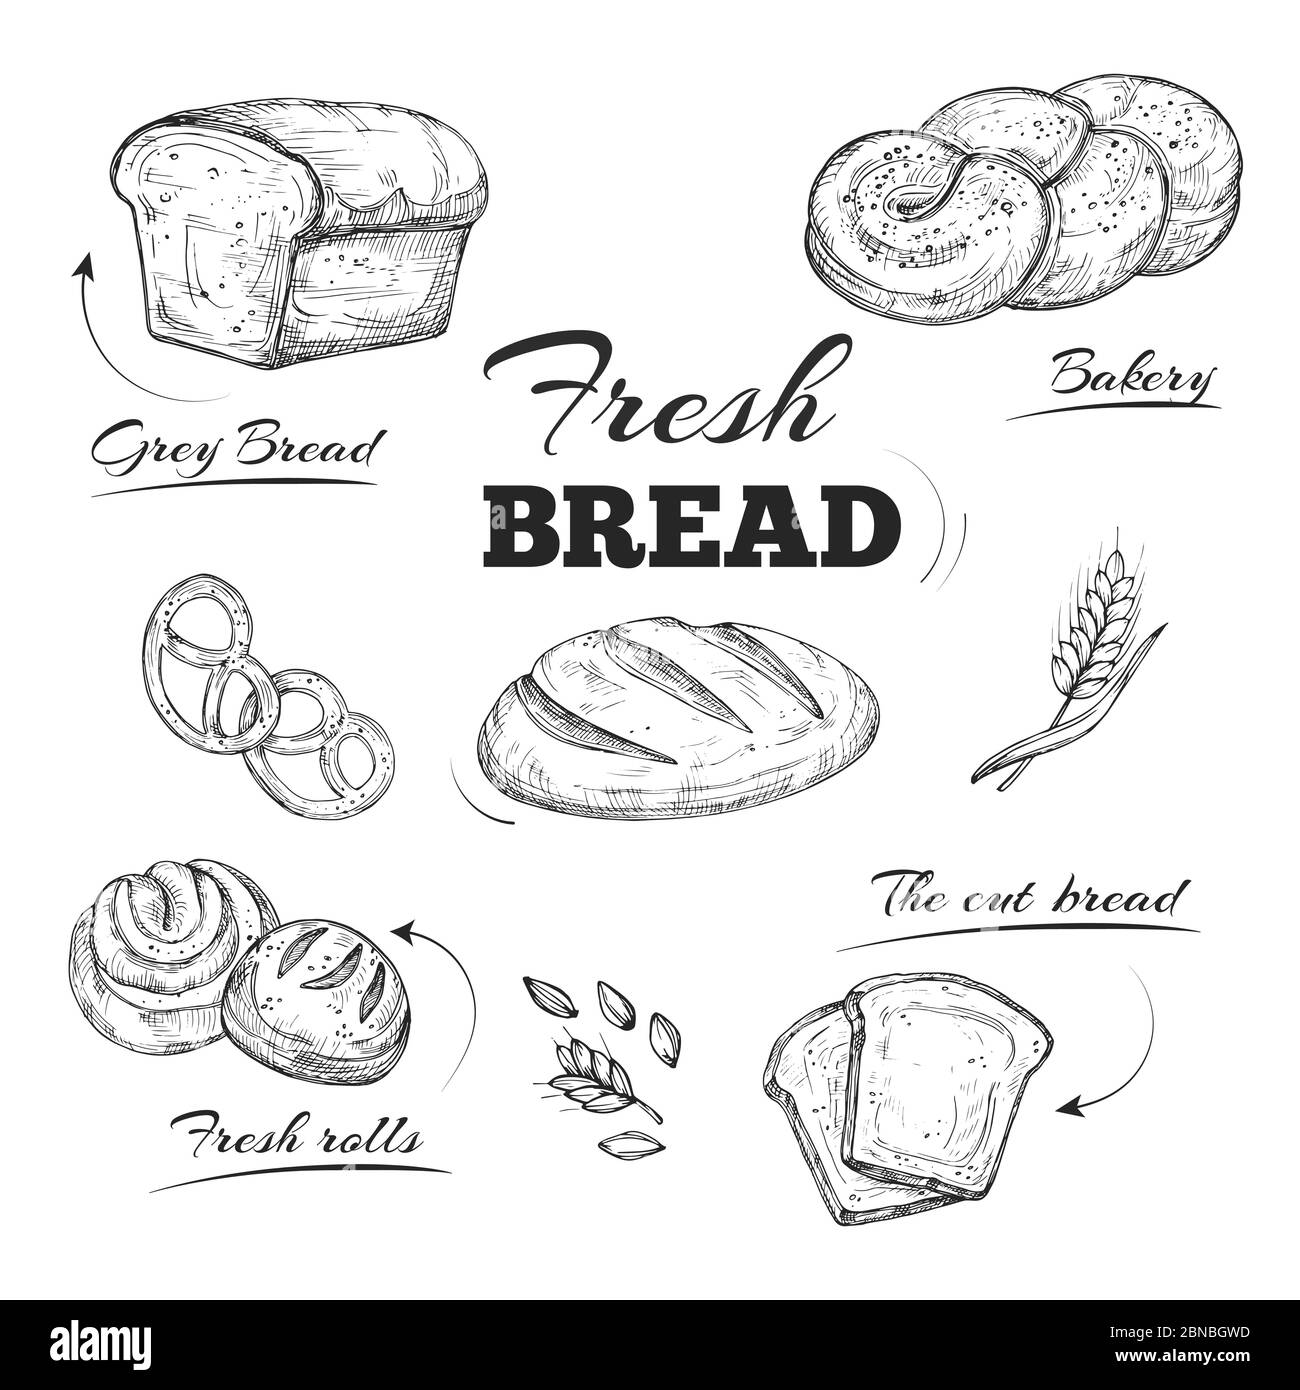 Handgezeichnete Bäckerei-Café-Karte. Vektorvorlage. Brot und Bäckerei, Brot und Bagel, Frühstück Brötchen Skizze Illustration Stock Vektor